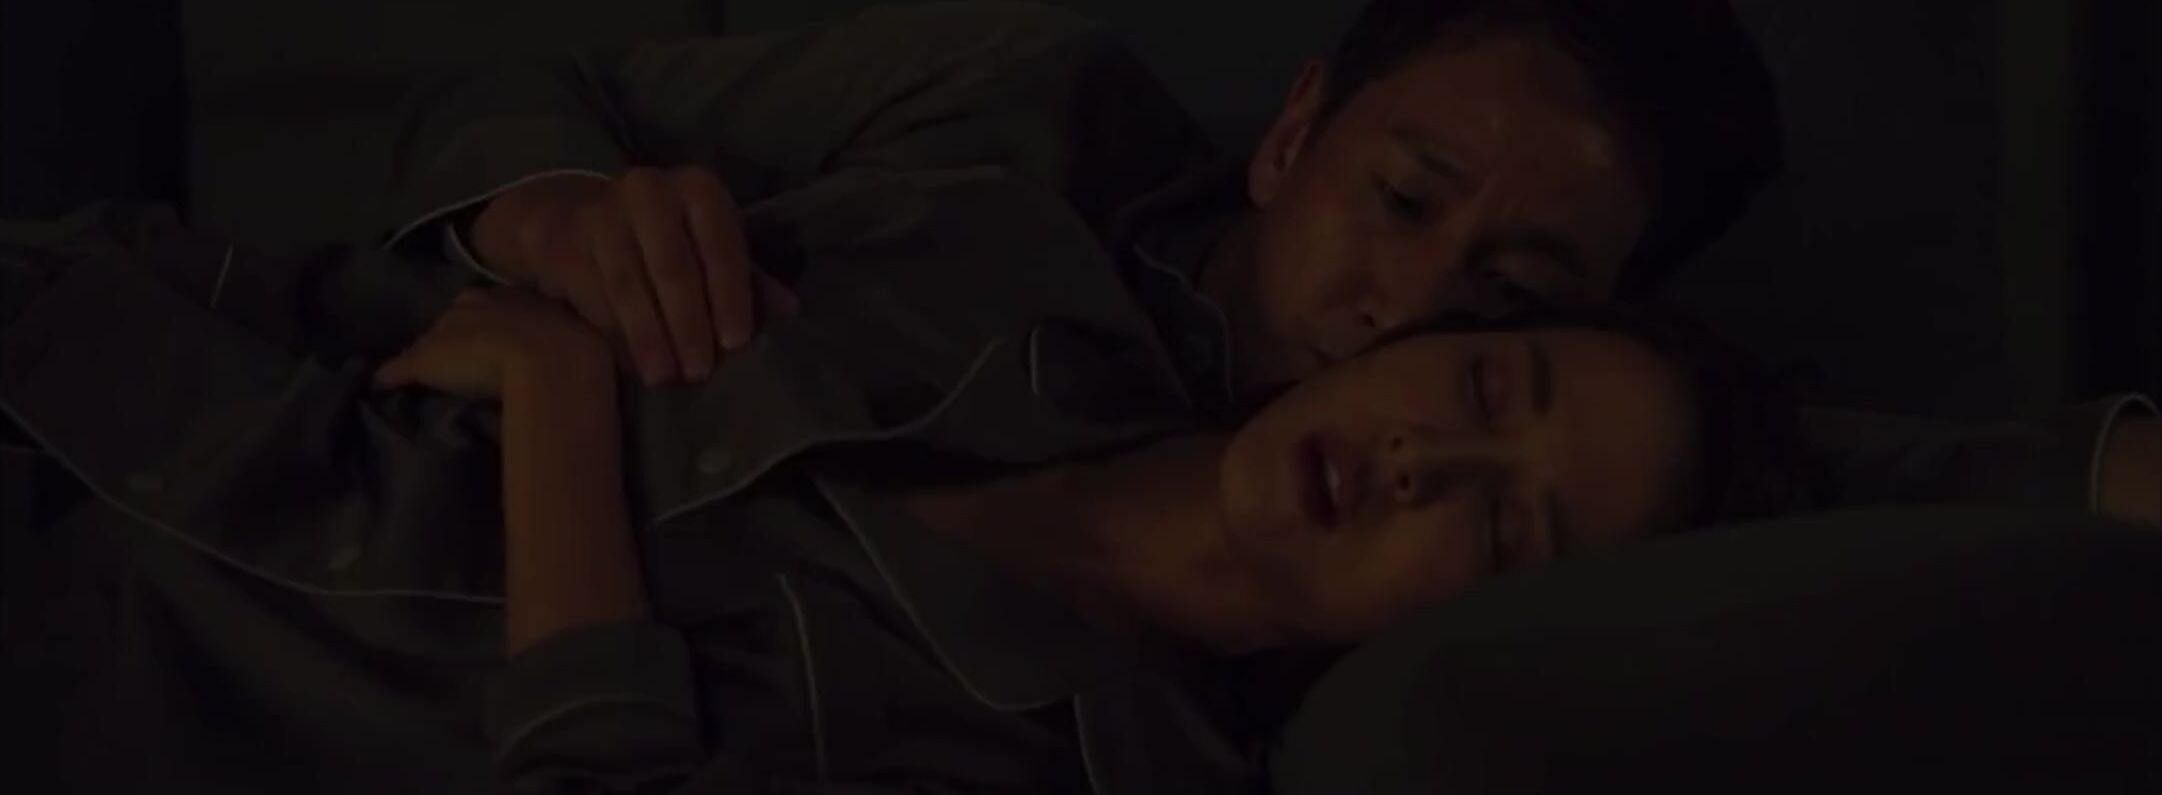 Hentai3D Korean movie Parasite mutual masturbation explicit moment with Jo Yeo-jeong Jesse Jane - 1